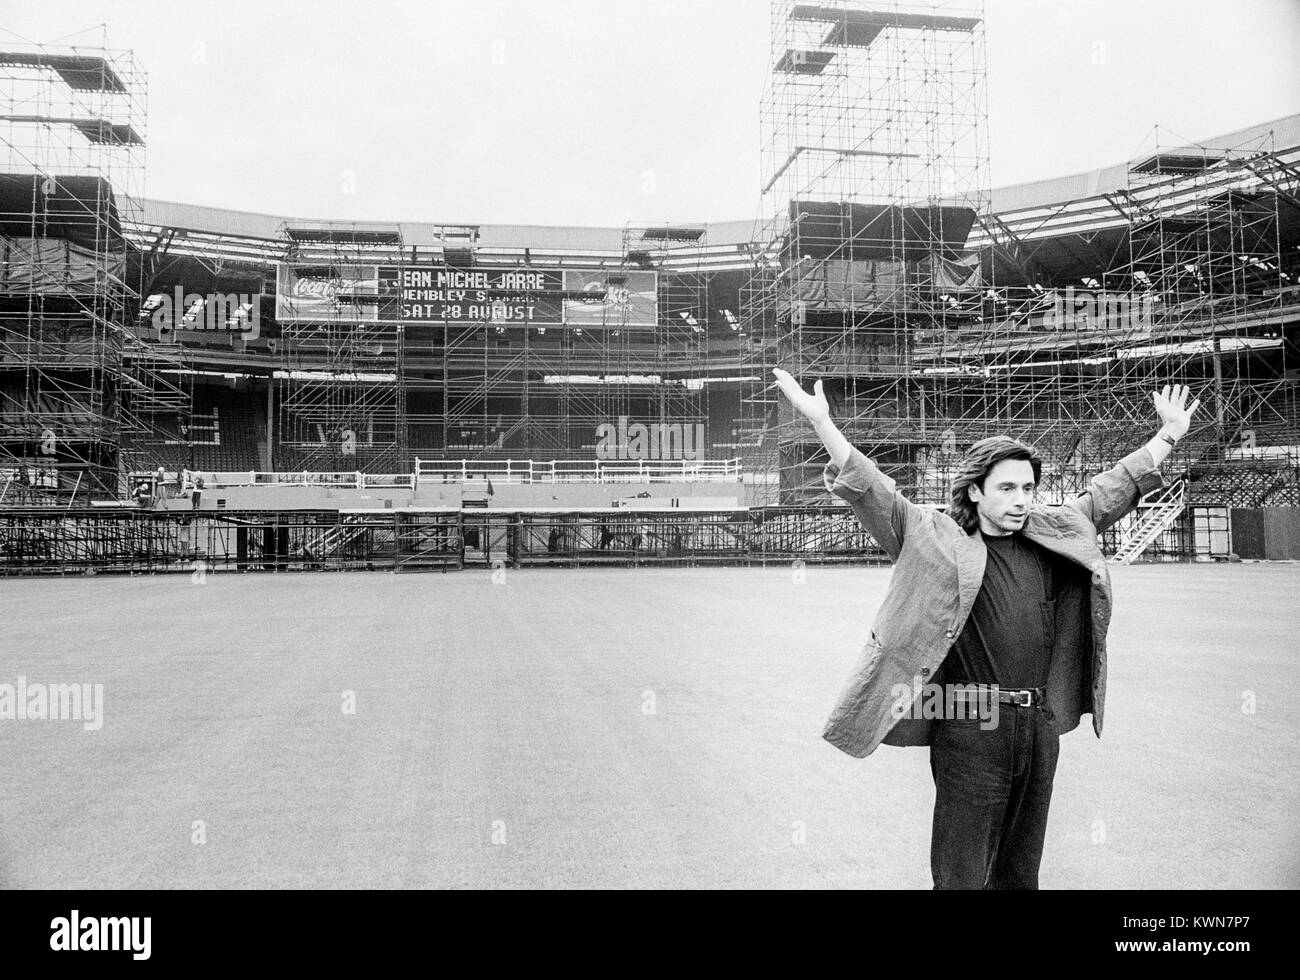 Jean Michel Jarre devant la scène mis en place par l'équipe de mise en scène de Shirley Edwin dans le stade de Wembley pour la tournée de concerts de Jean Michel Jarre, Europe en concert, Londres, 26 - 28 août 1993 Banque D'Images